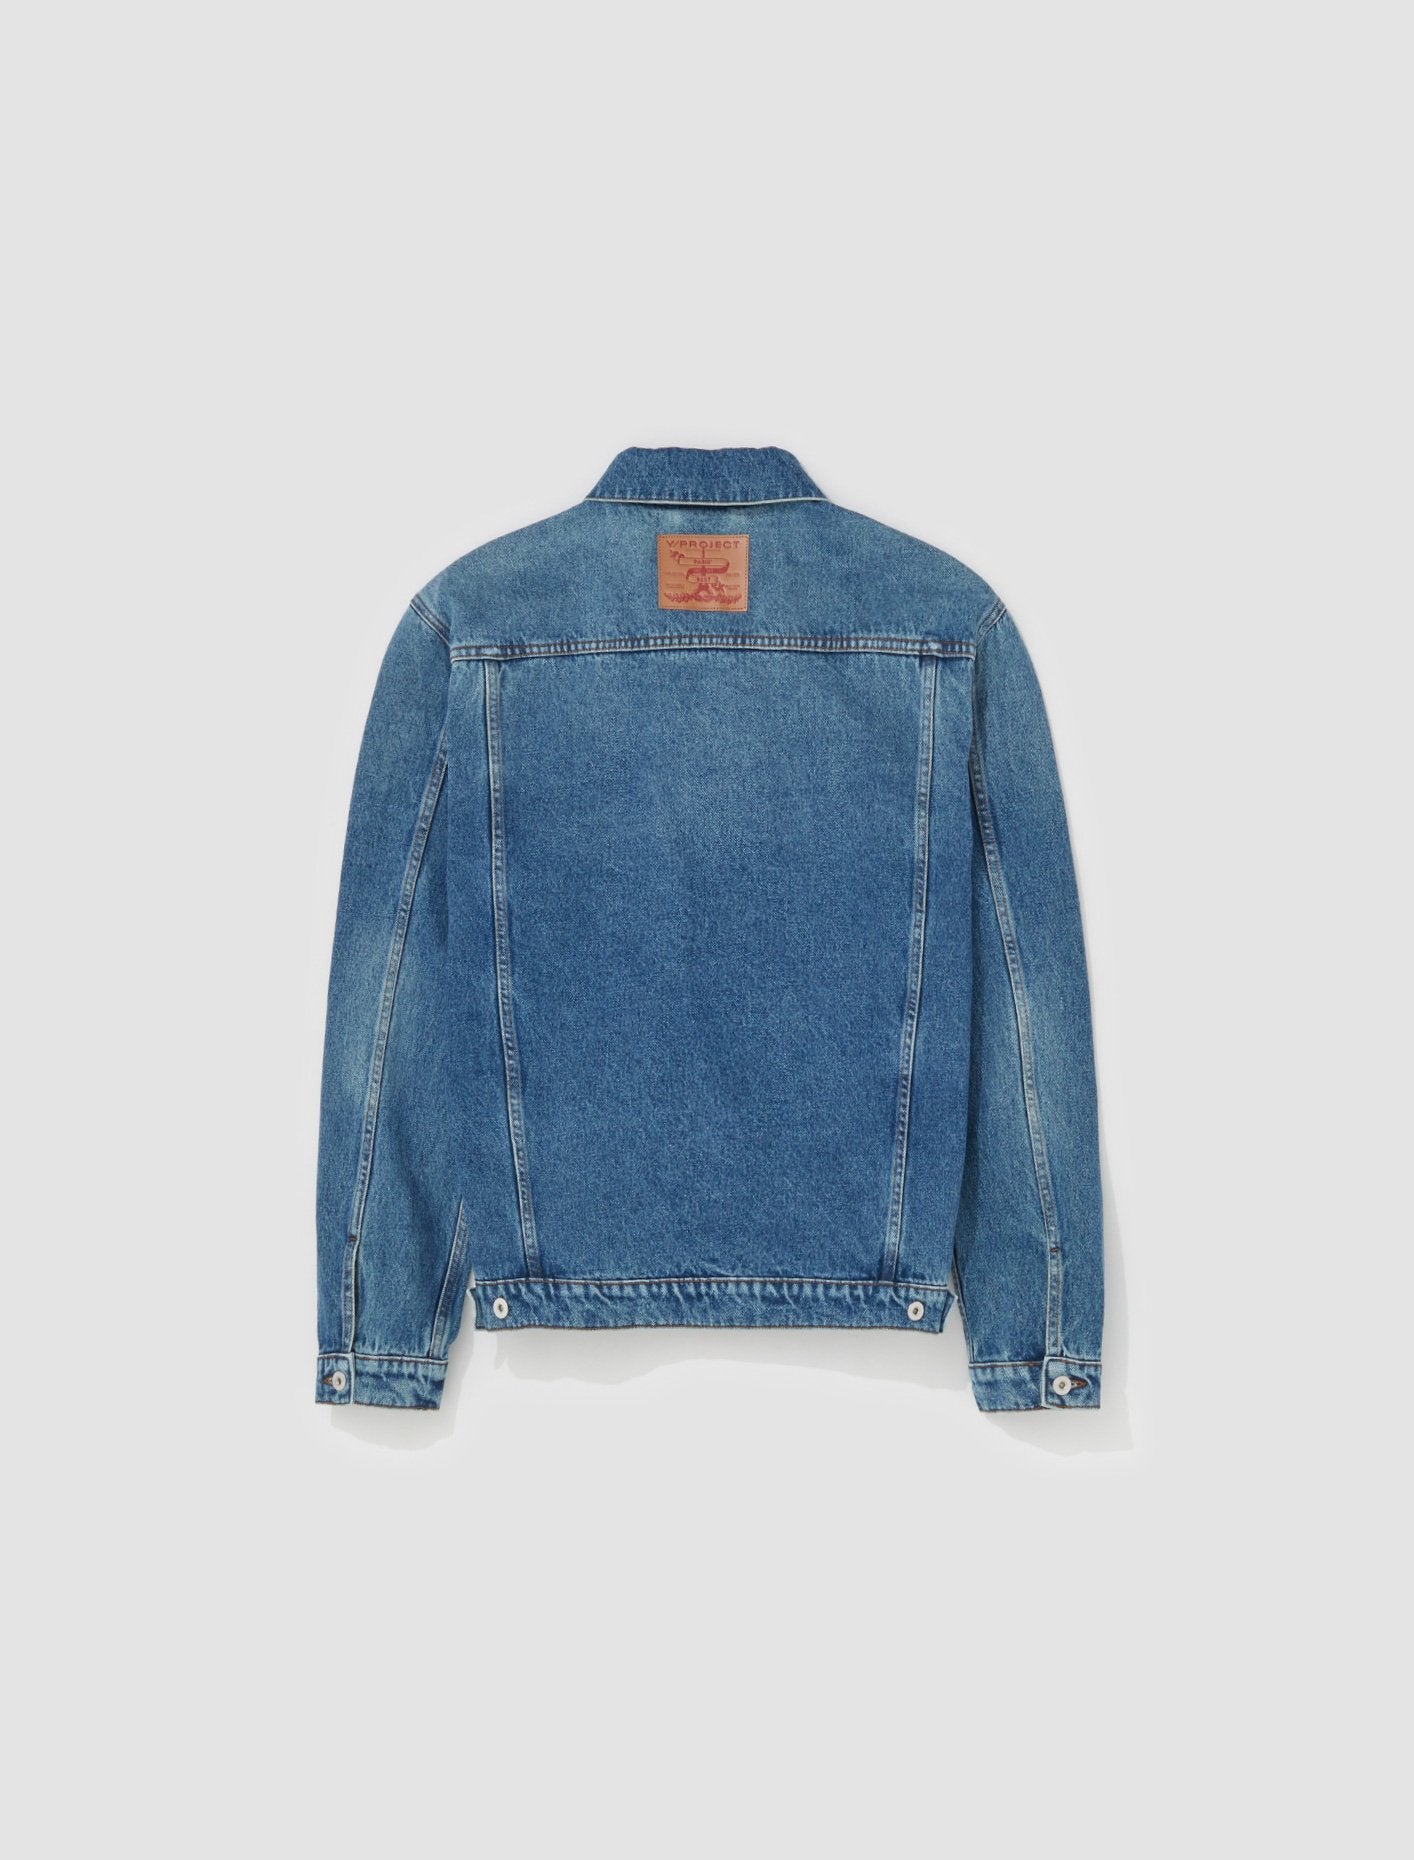 Evergreen Wire Denim Jacket in Vintage Blue